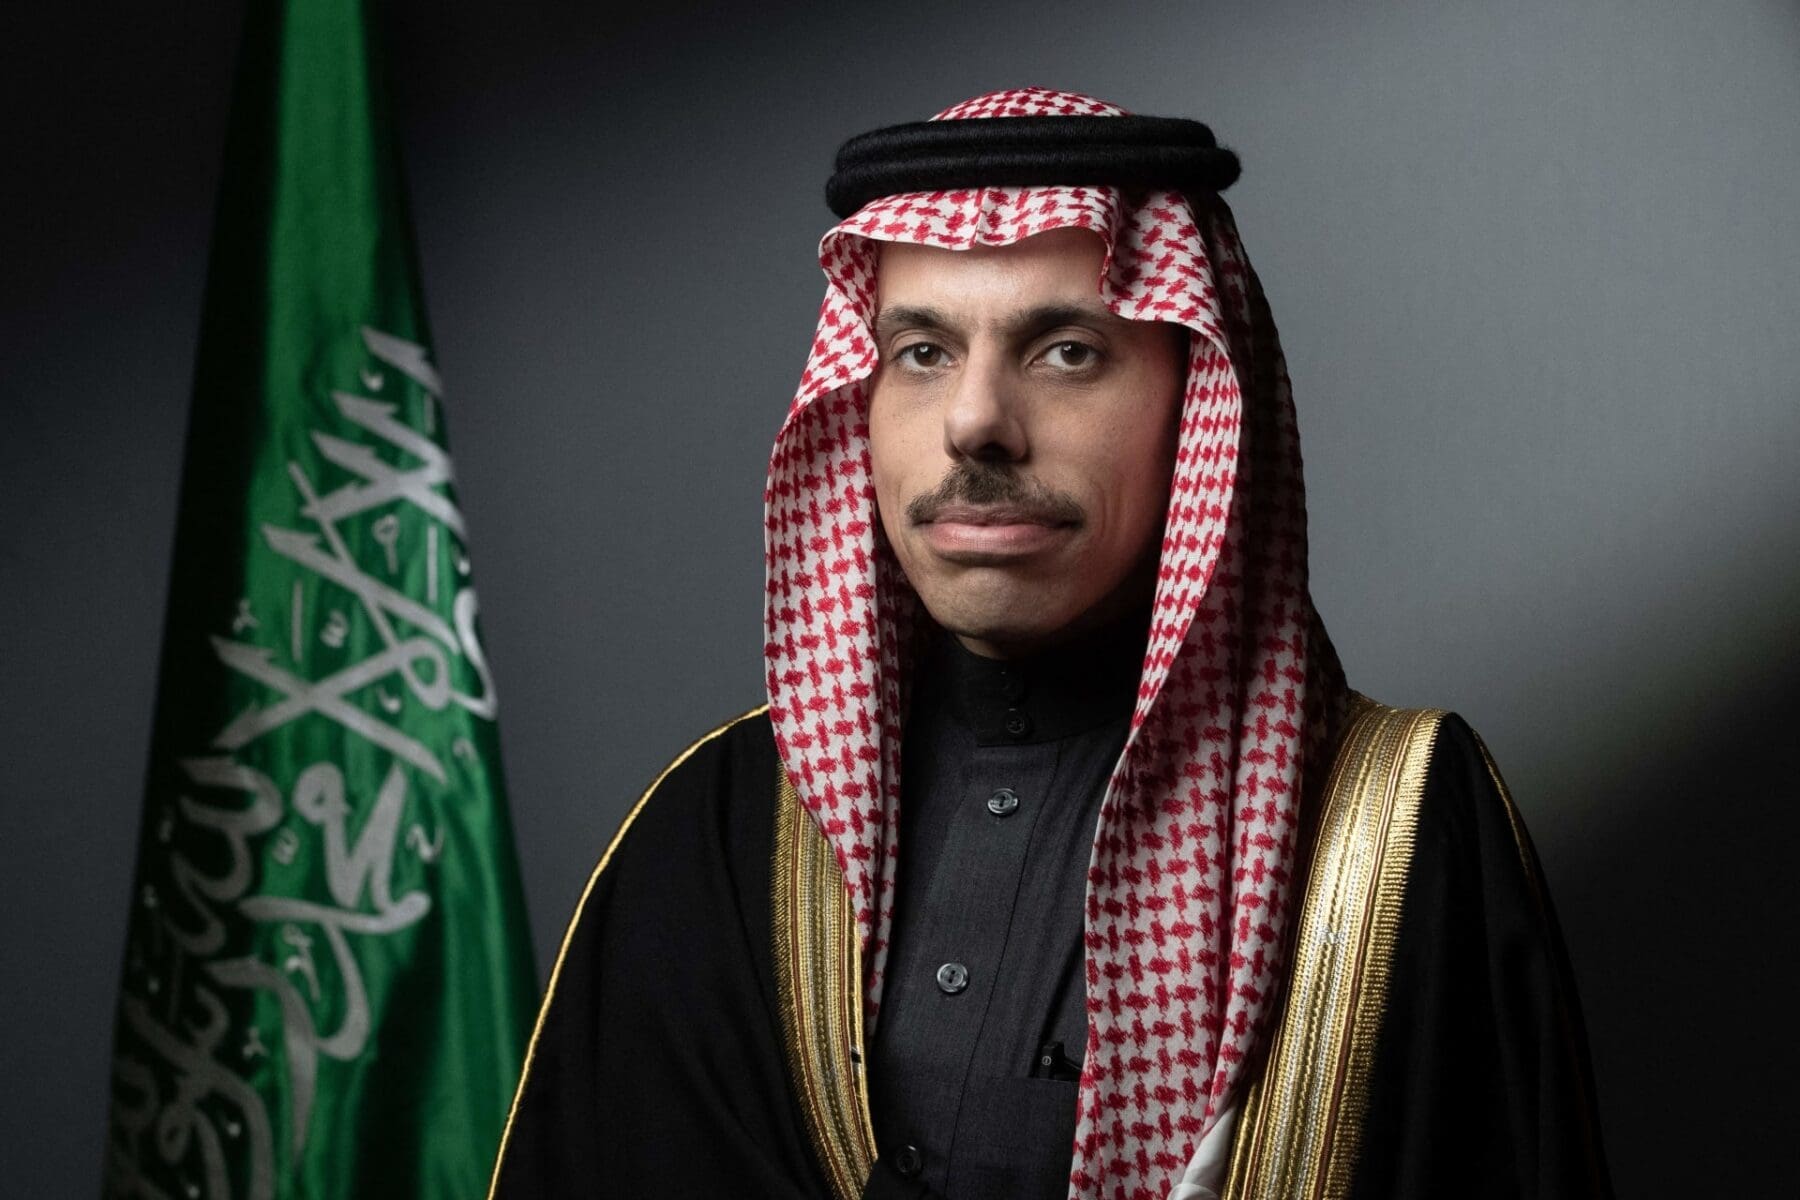 صاحب السمو الأمير "فيصل بن فرحان بن عبد الله آل سعود"